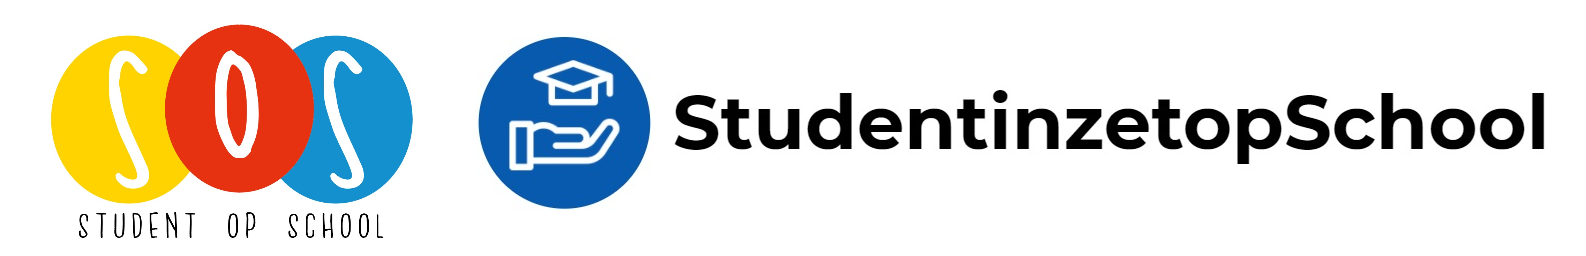 logo's van student op school en student inzet op school